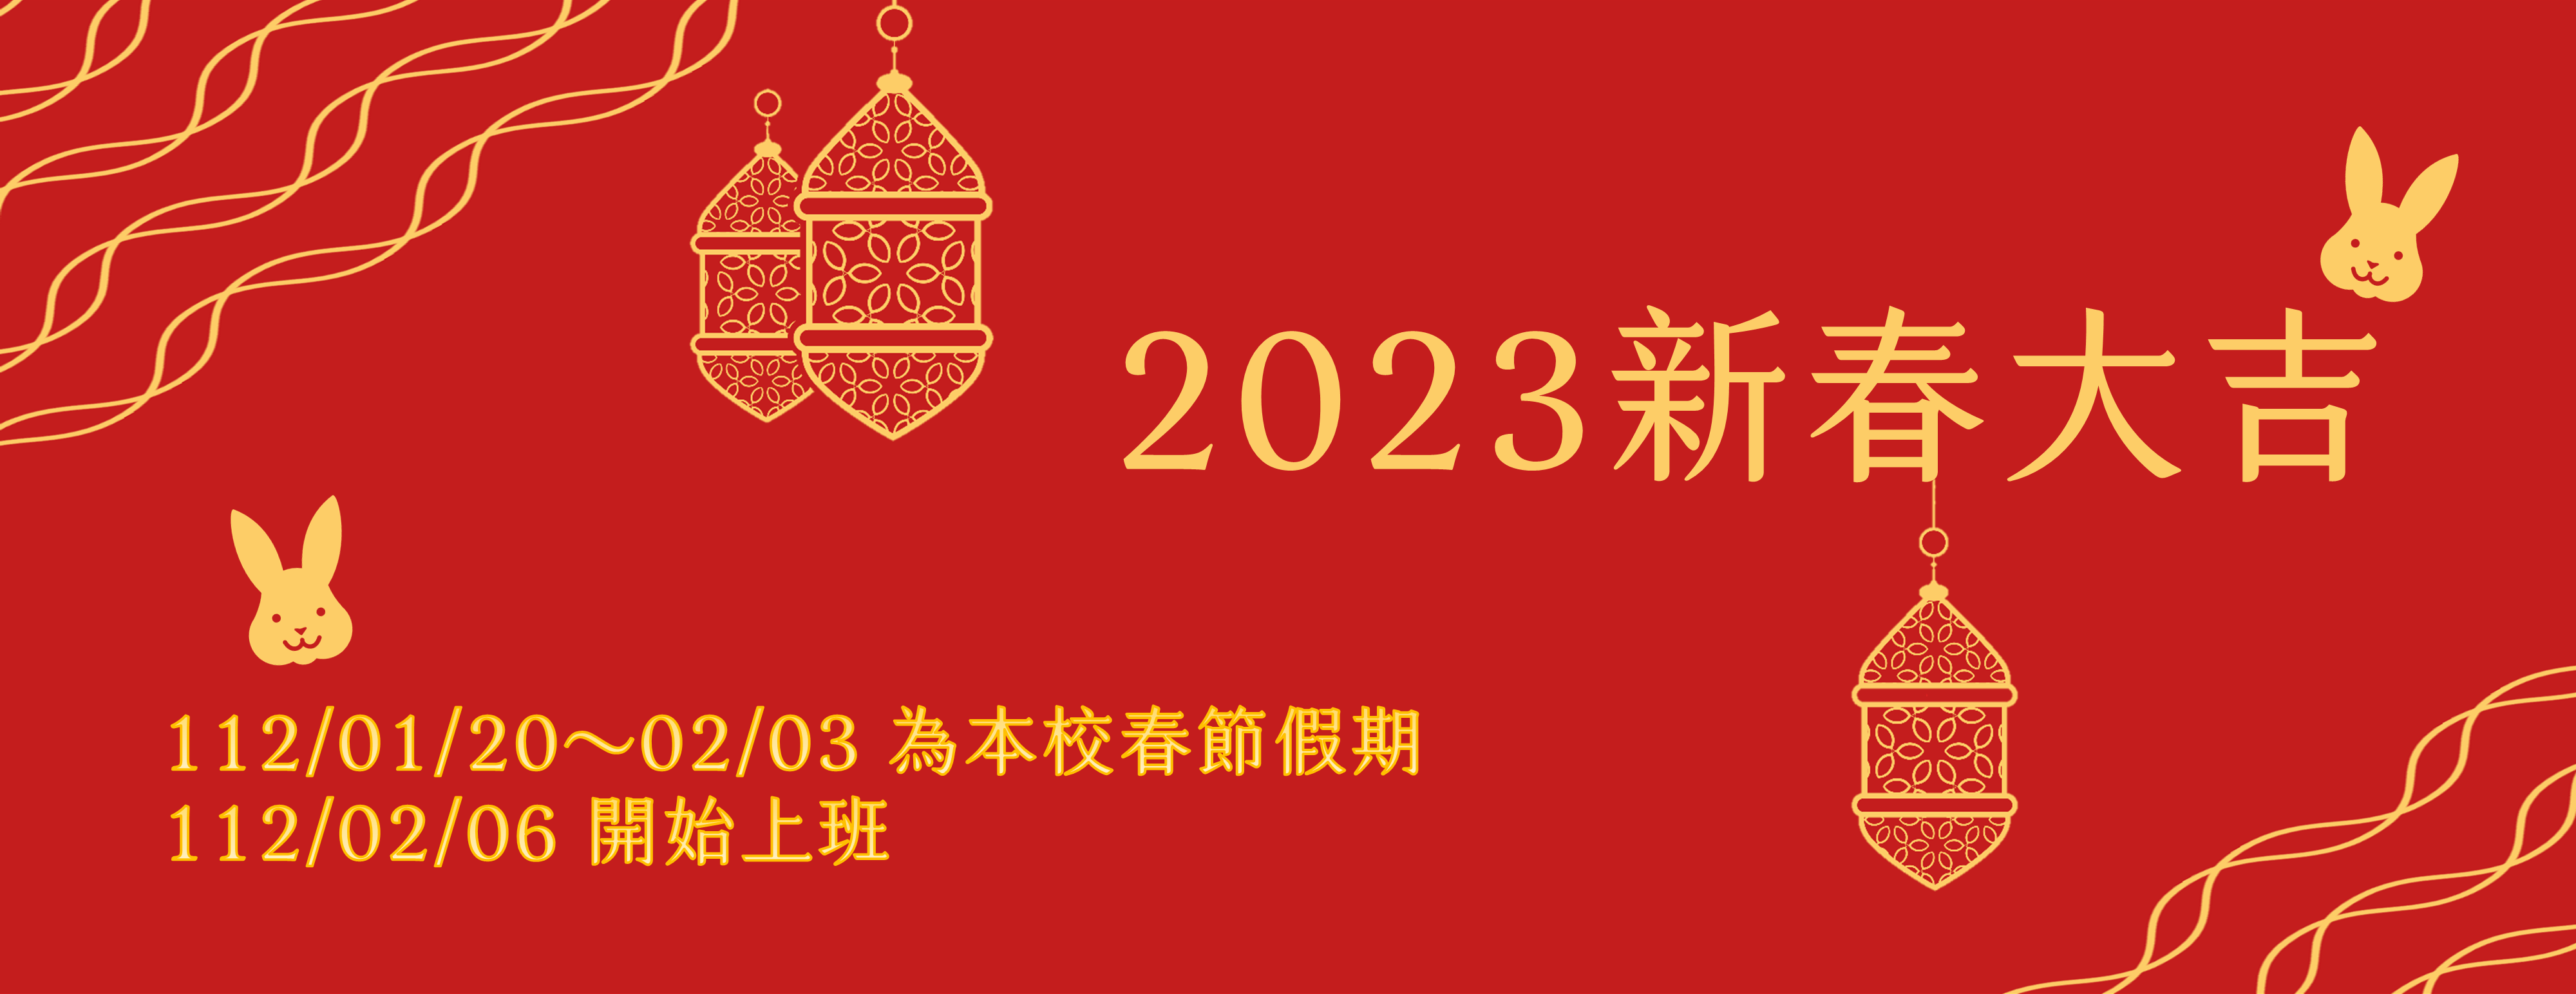 2023新春大吉